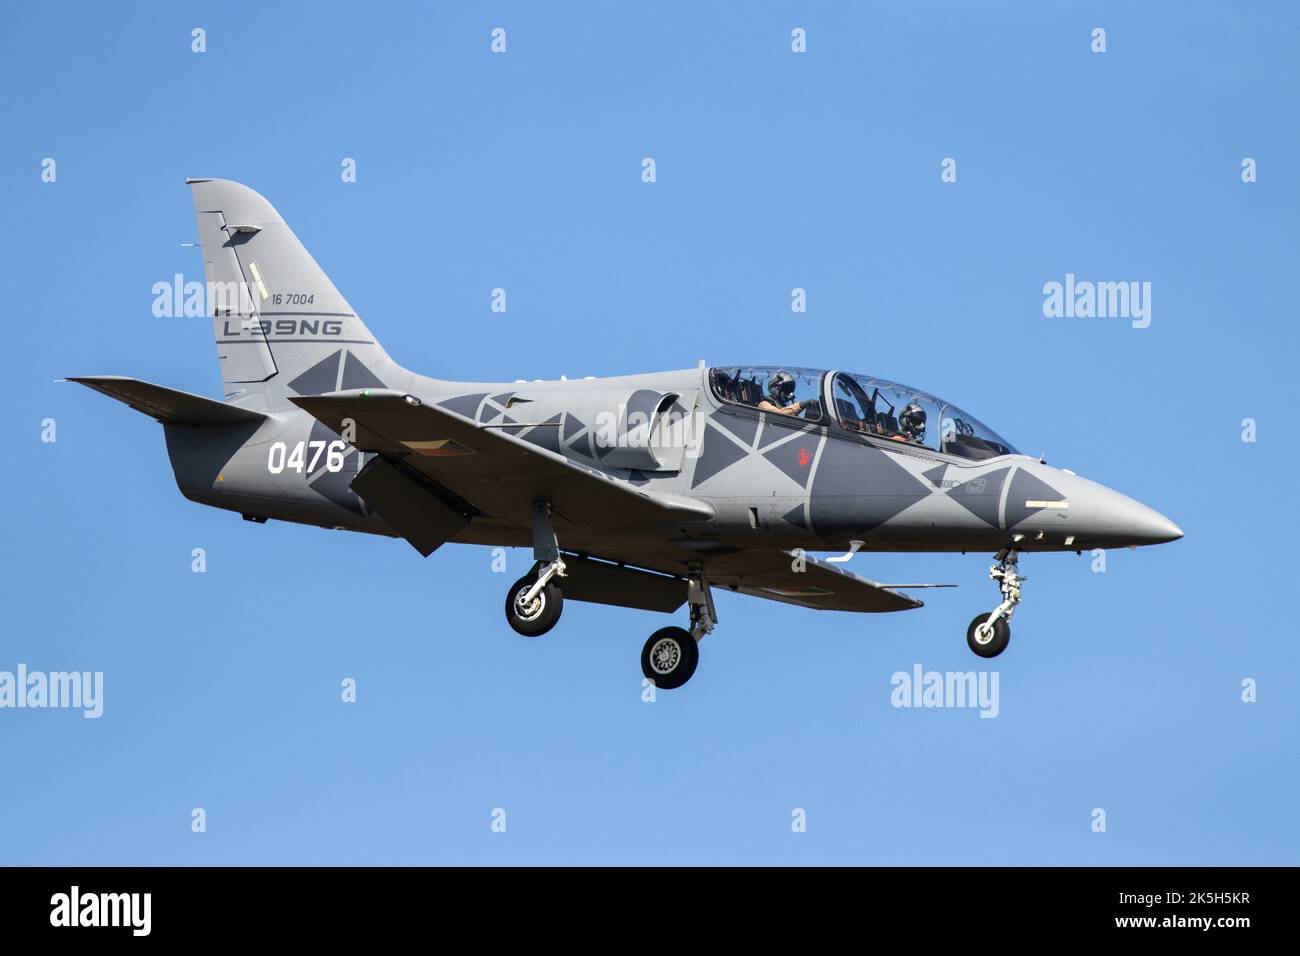 Militärflugzeug Aero L-39NG (Next Generation), neuer tschechischer Militärtrainer und leichtes Kampfflugzeug, das Slowakische Internationale Luftfest SIAF 2022 Stockfoto